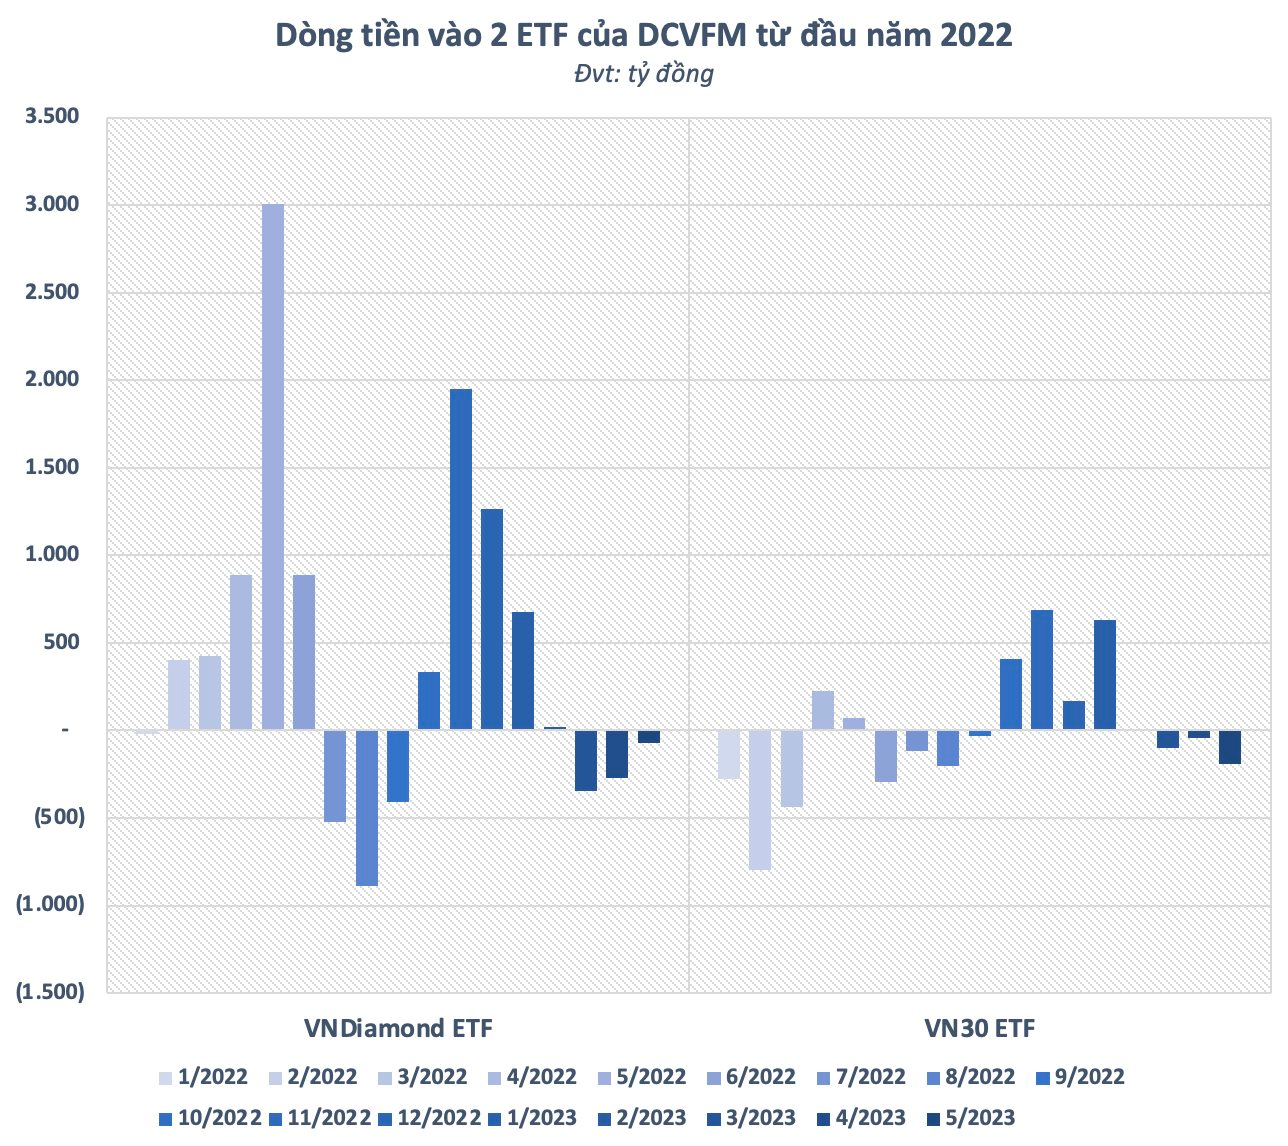 Liên tục “xả hàng” mạnh, lượng chứng chỉ quỹ ETF của Việt Nam trong tay người Thái xuống thấp nhất từ đầu năm - Ảnh 3.